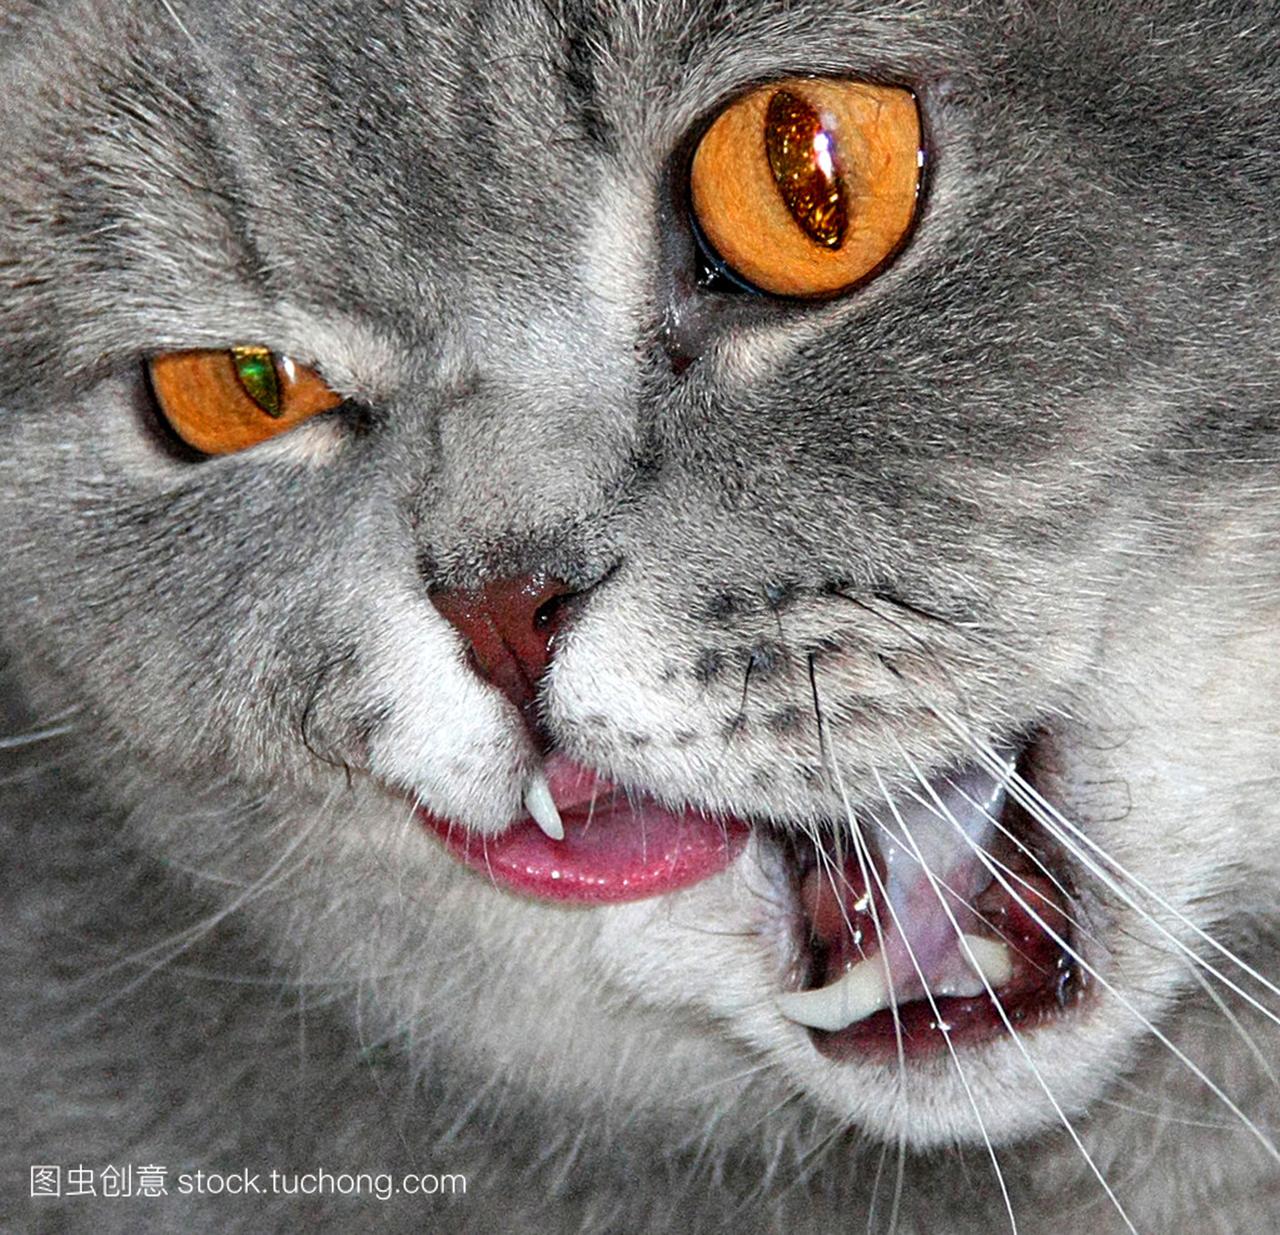 猫咪的眼睛颜色的琥珀色